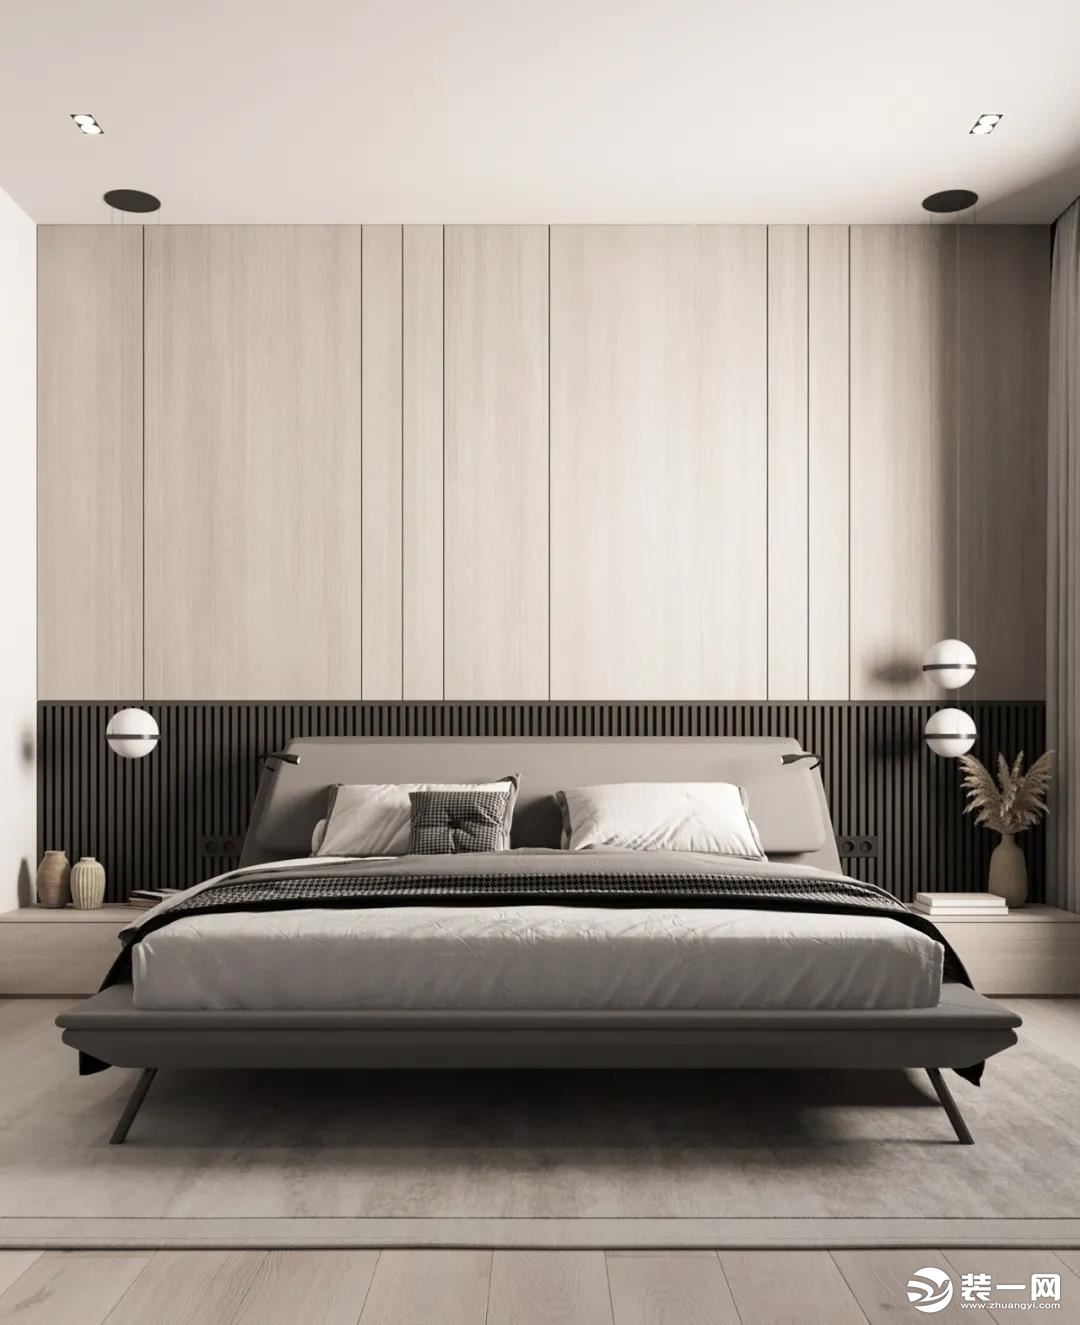 卧室的设计增添了一丝神秘感，绝大部分使用了木质元素，整体风格温文儒雅，令人卸下防备，安然入睡。